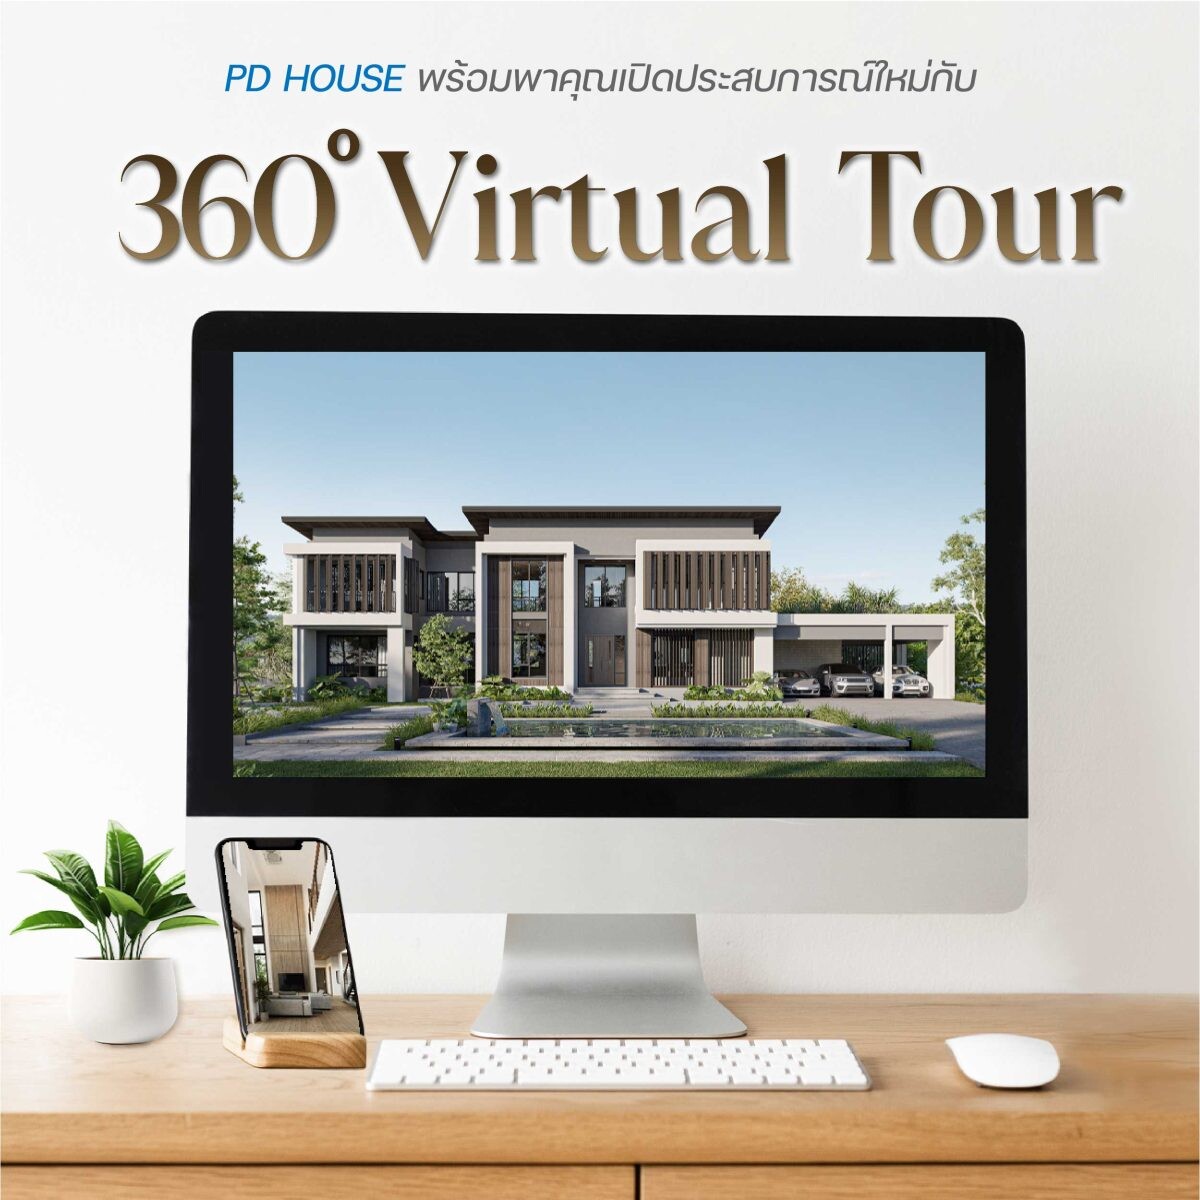 พีดีเฮ้าส์นำ 360? Virtual Tour ช่วยเพิ่มยอดขาย ชมแบบบ้านเสมือนจริงตอบโจทย์ยุคดิจิทัล